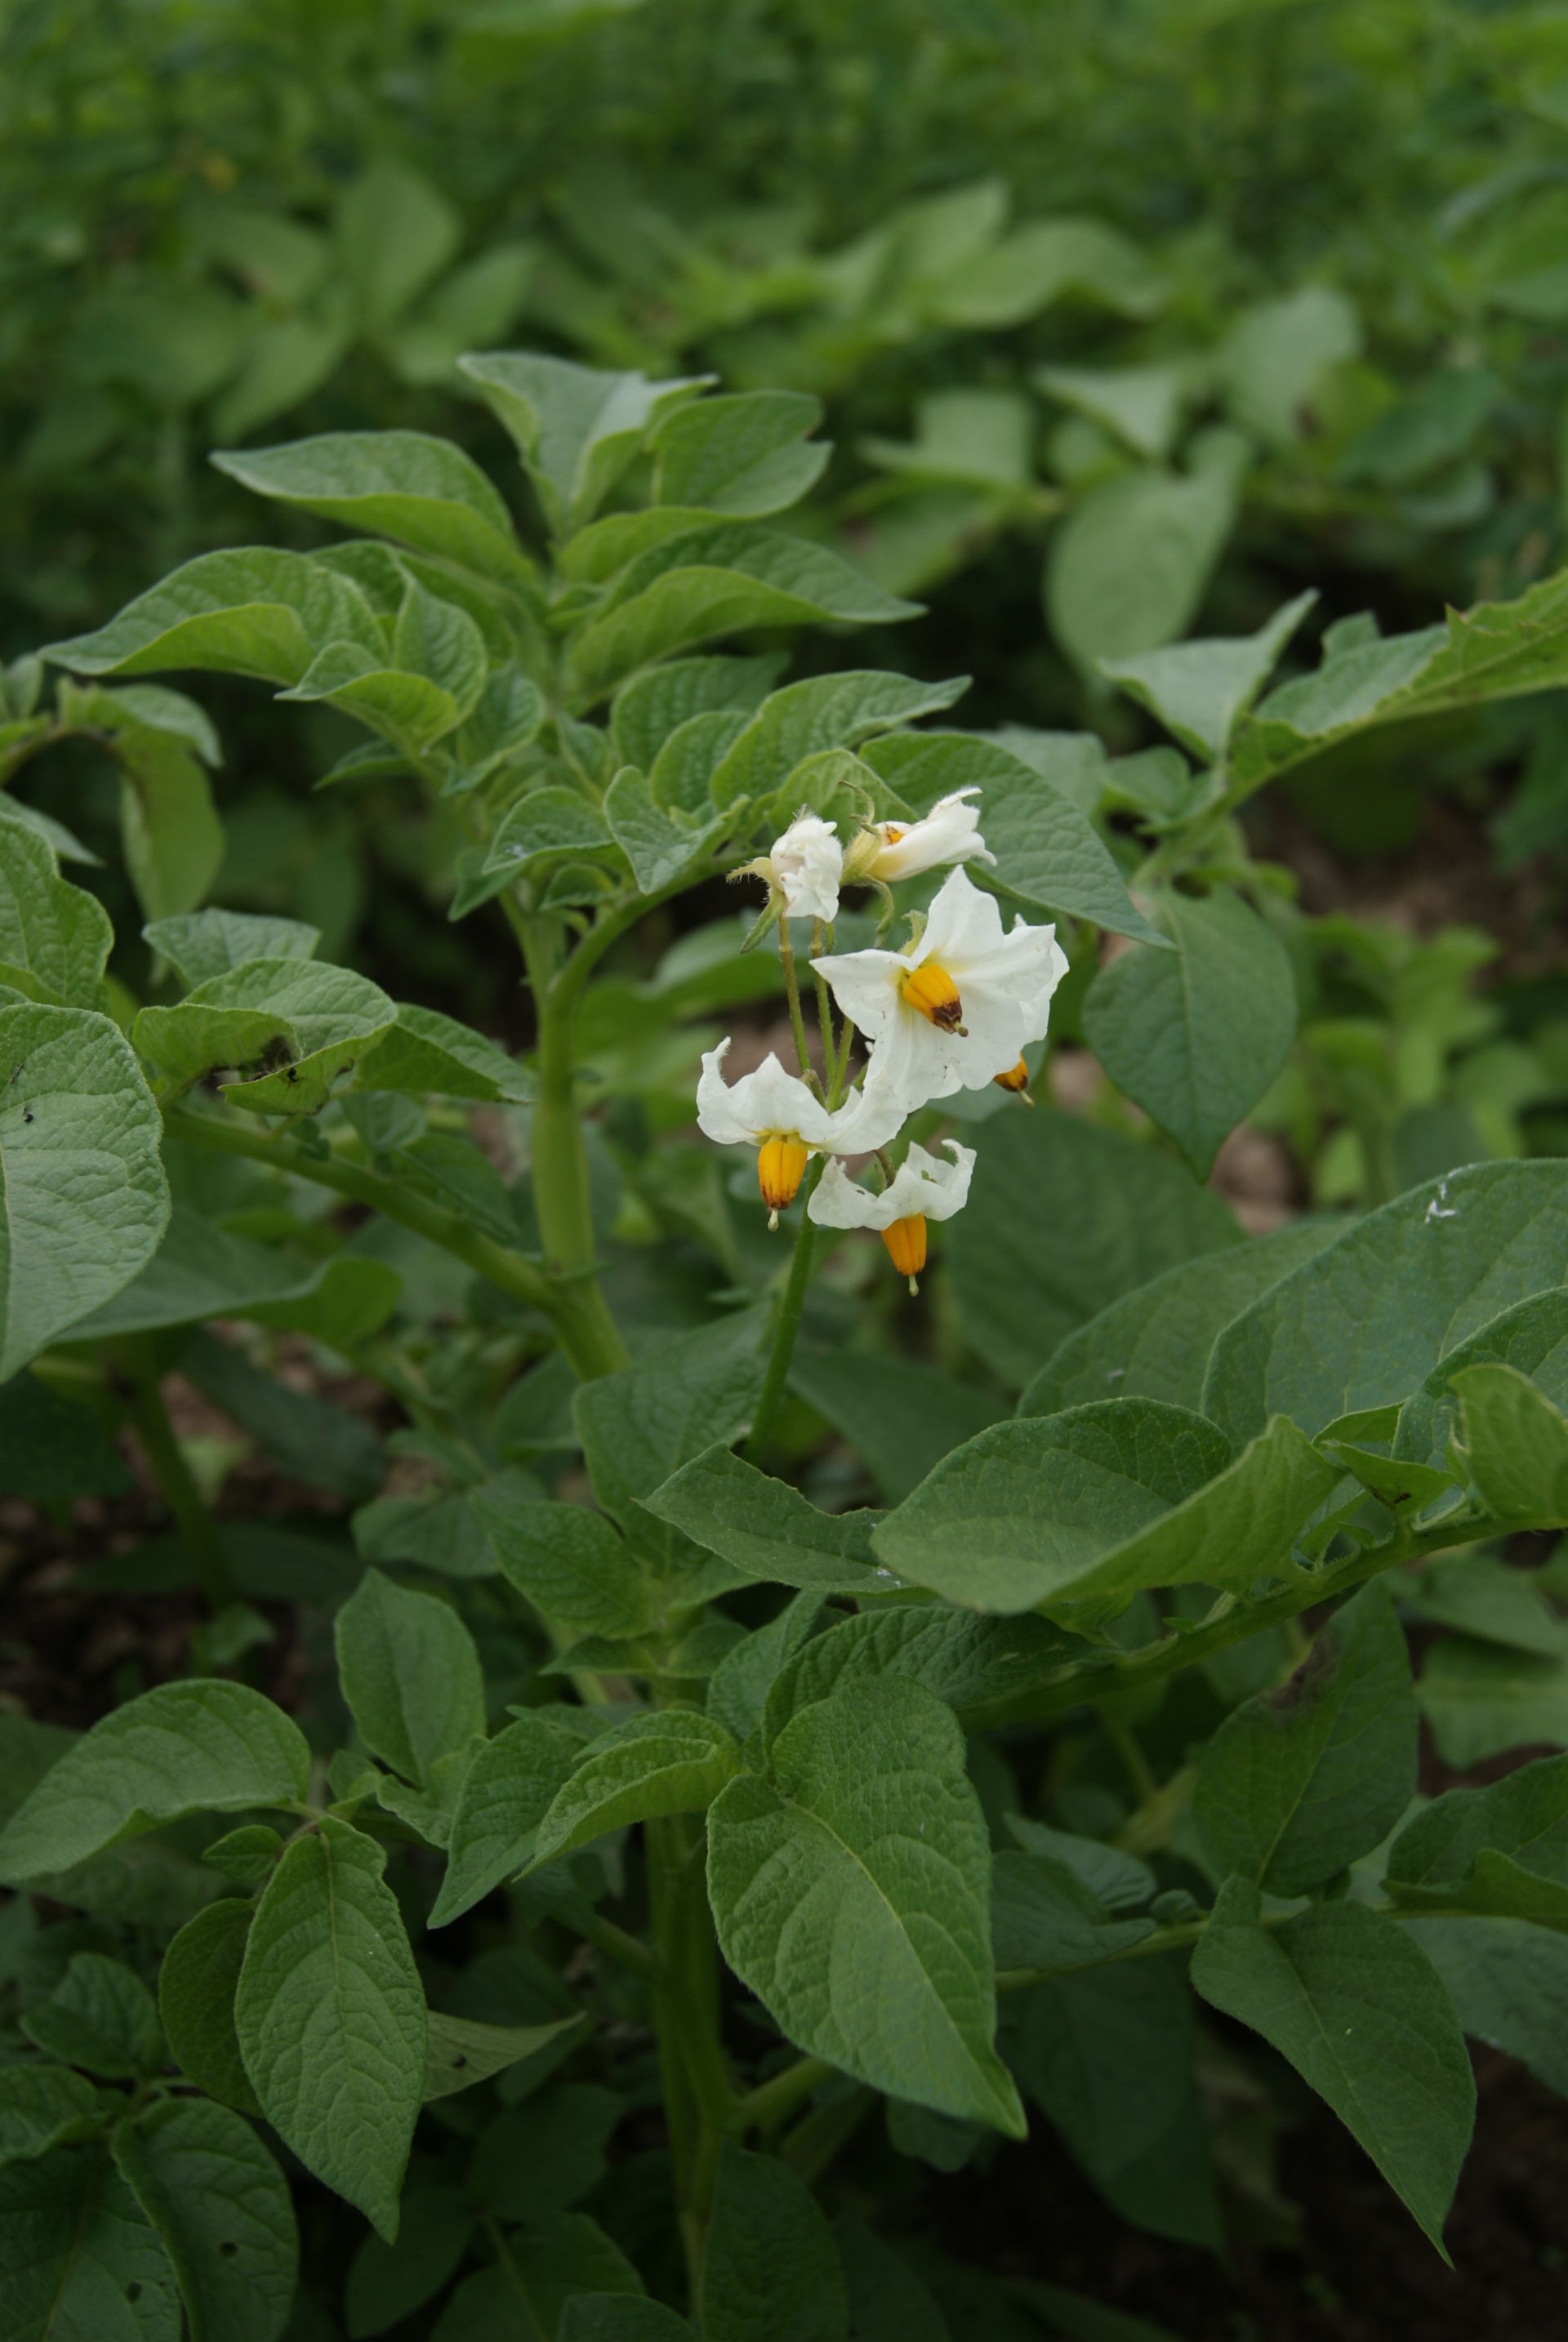 Kartoffel (Solanum tuberosum)